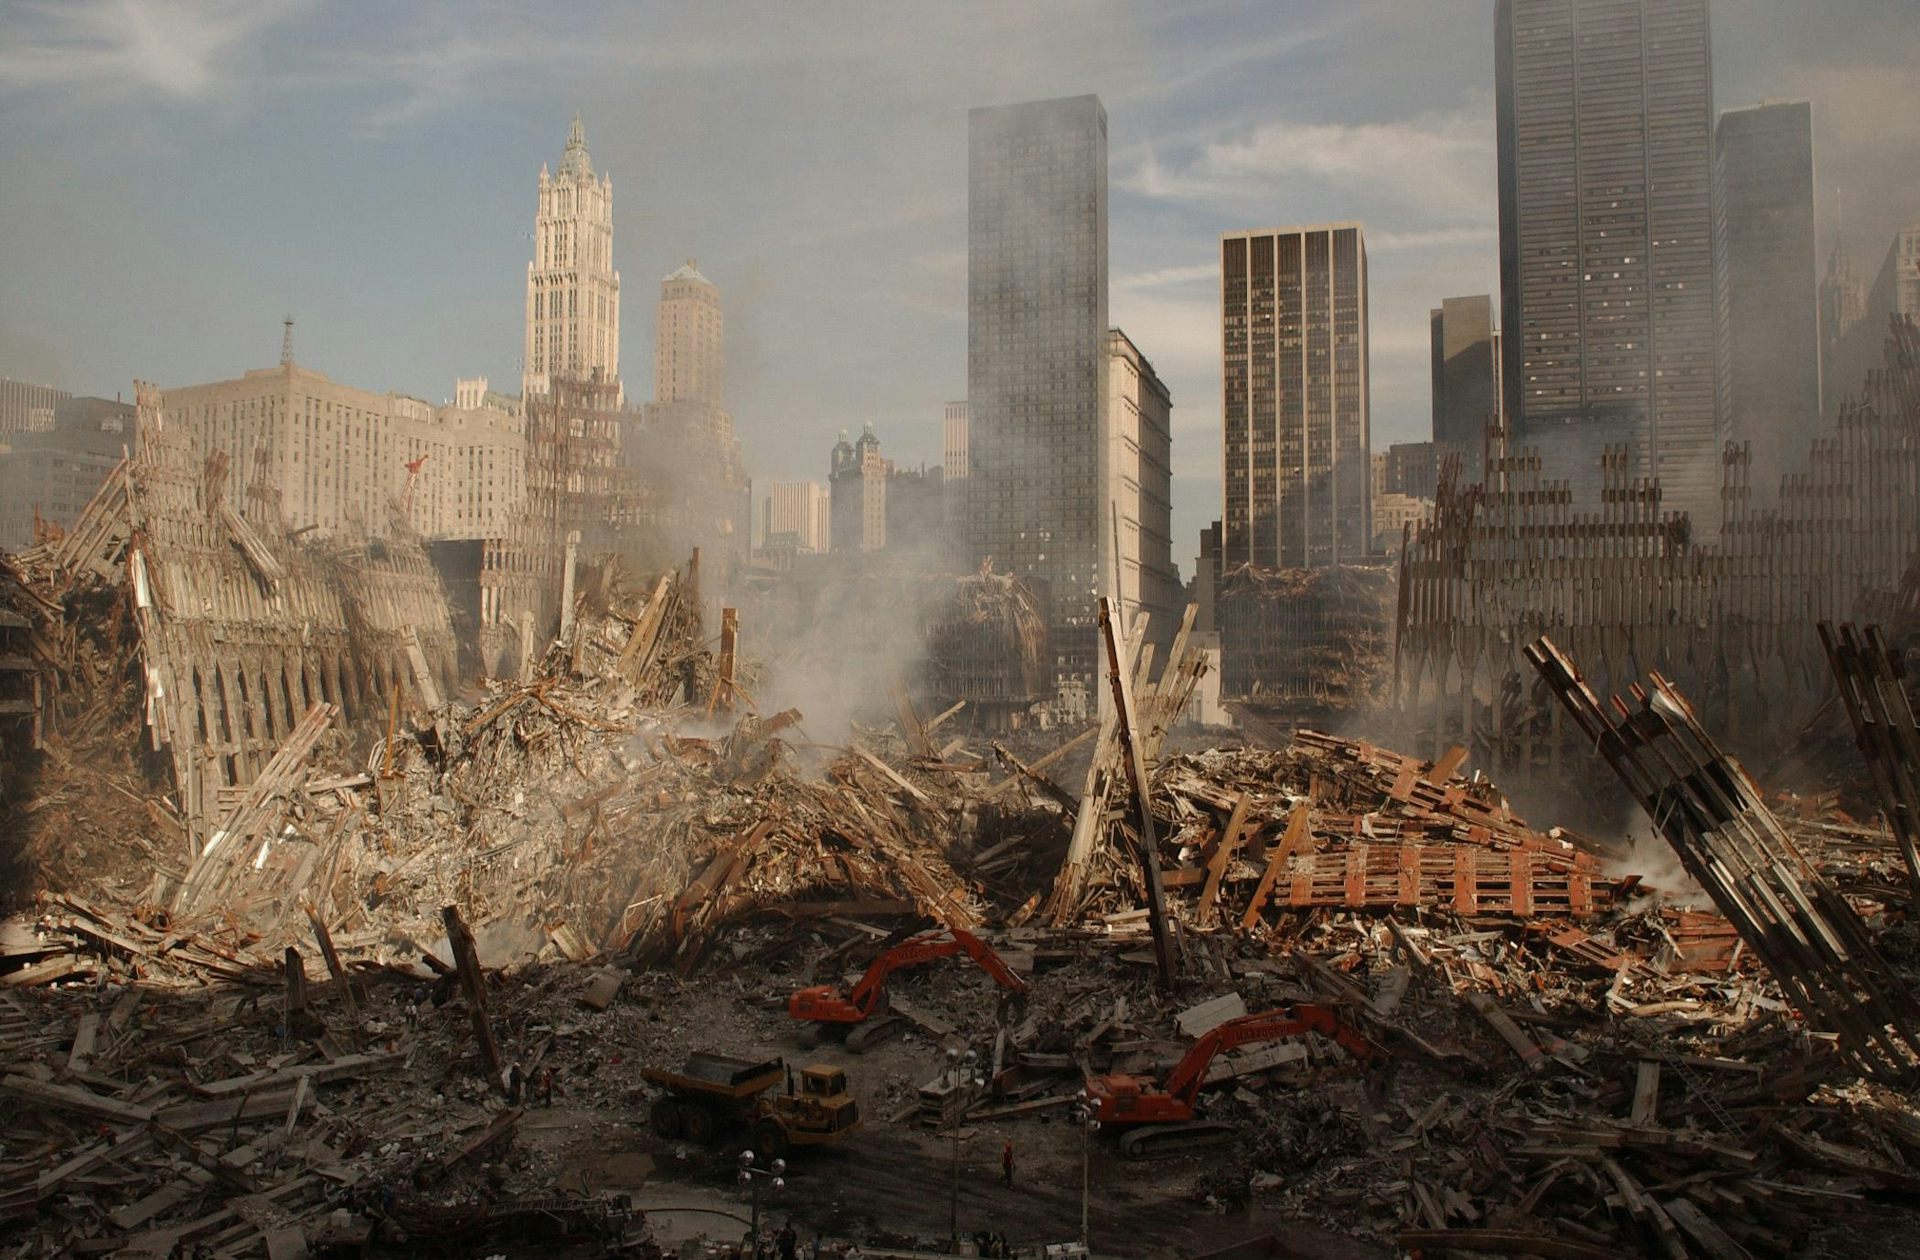 Panoramafoto von Ground Zero, dem Standort des World Trade Centers, am Tag nach 9/11.